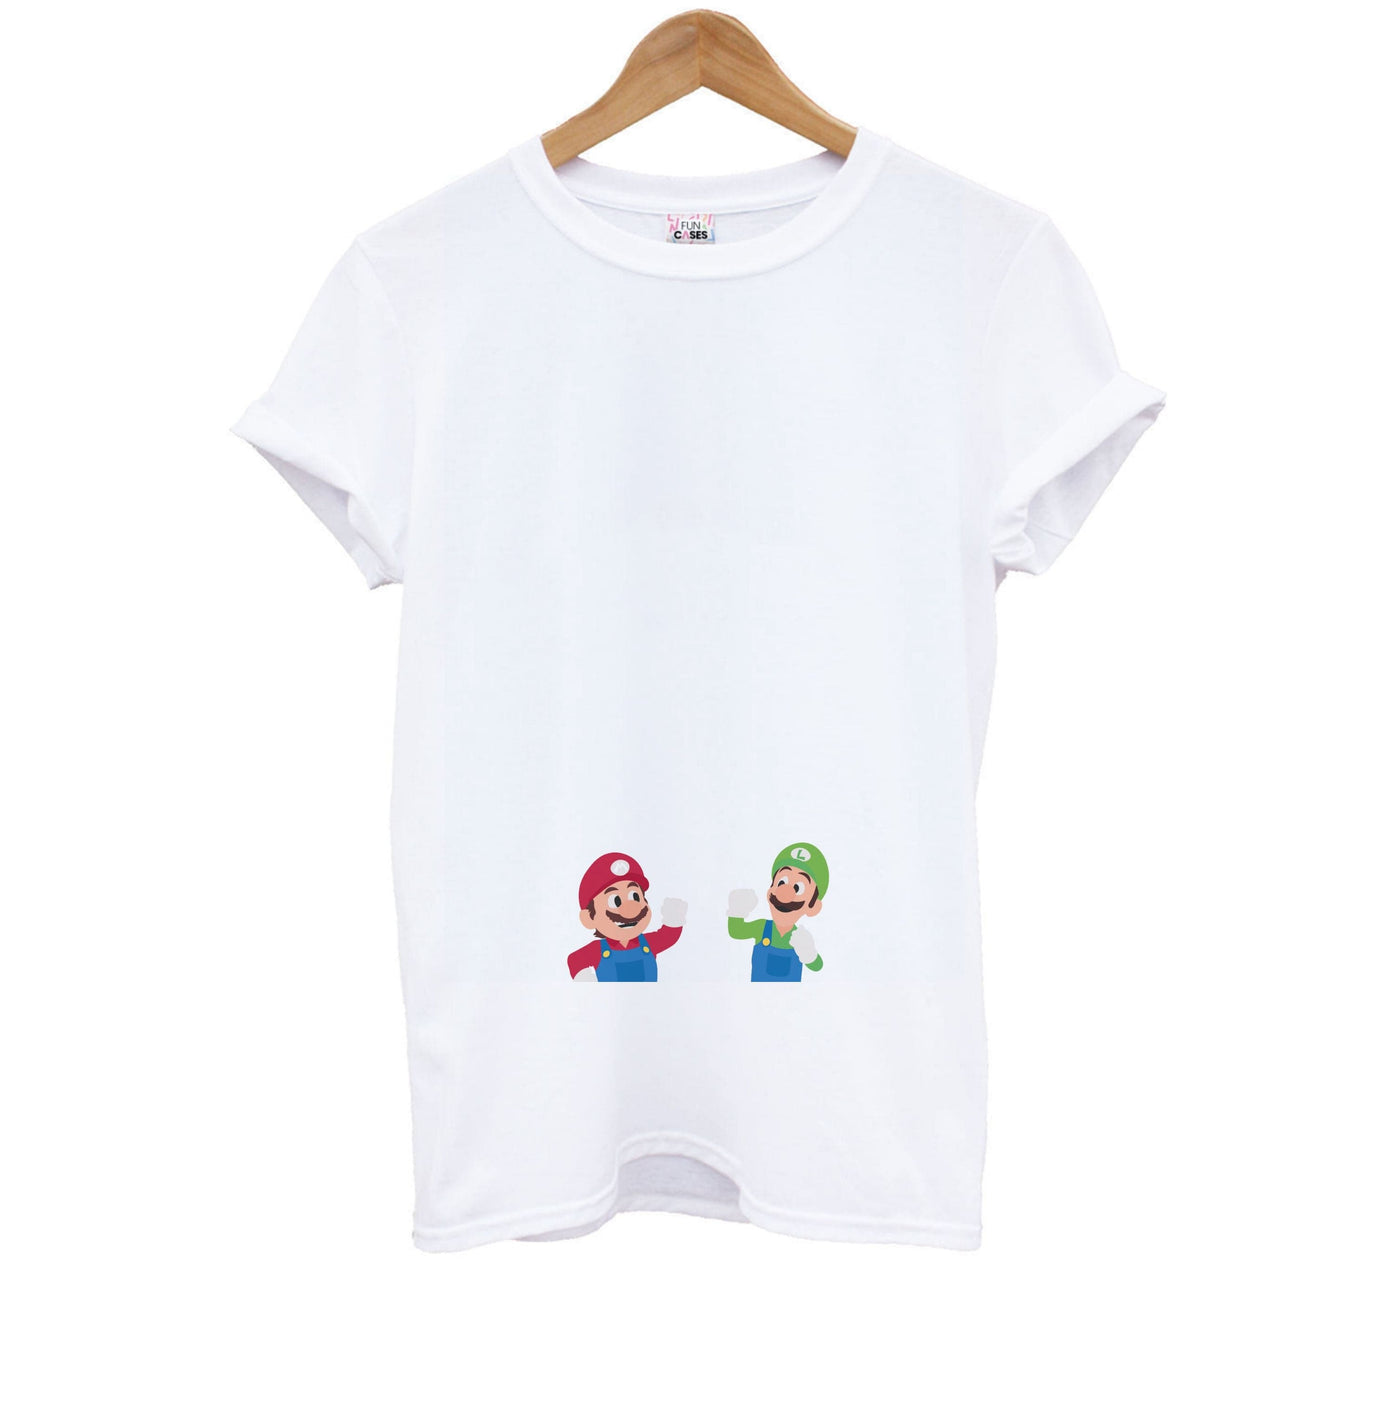 Mario And Luigi - The Super Mario Bros Kids T-Shirt